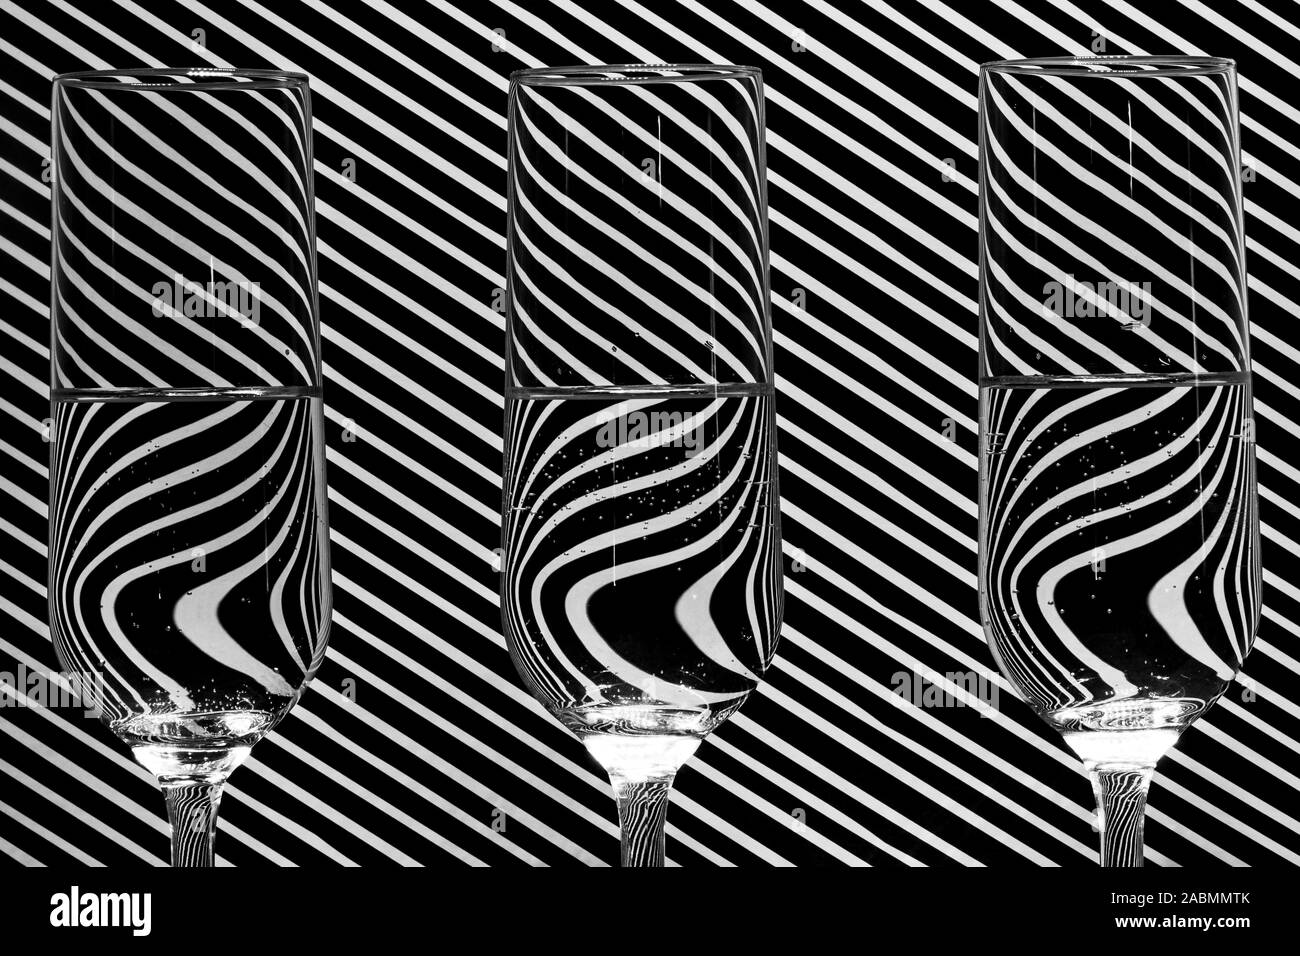 Bild von drei gefüllt Champagner Glas mit Wasser vor einem Hintergrund mit einer diagonalen Linie Muster, mit einem Spiegel Reflektion im Glas Stockfoto